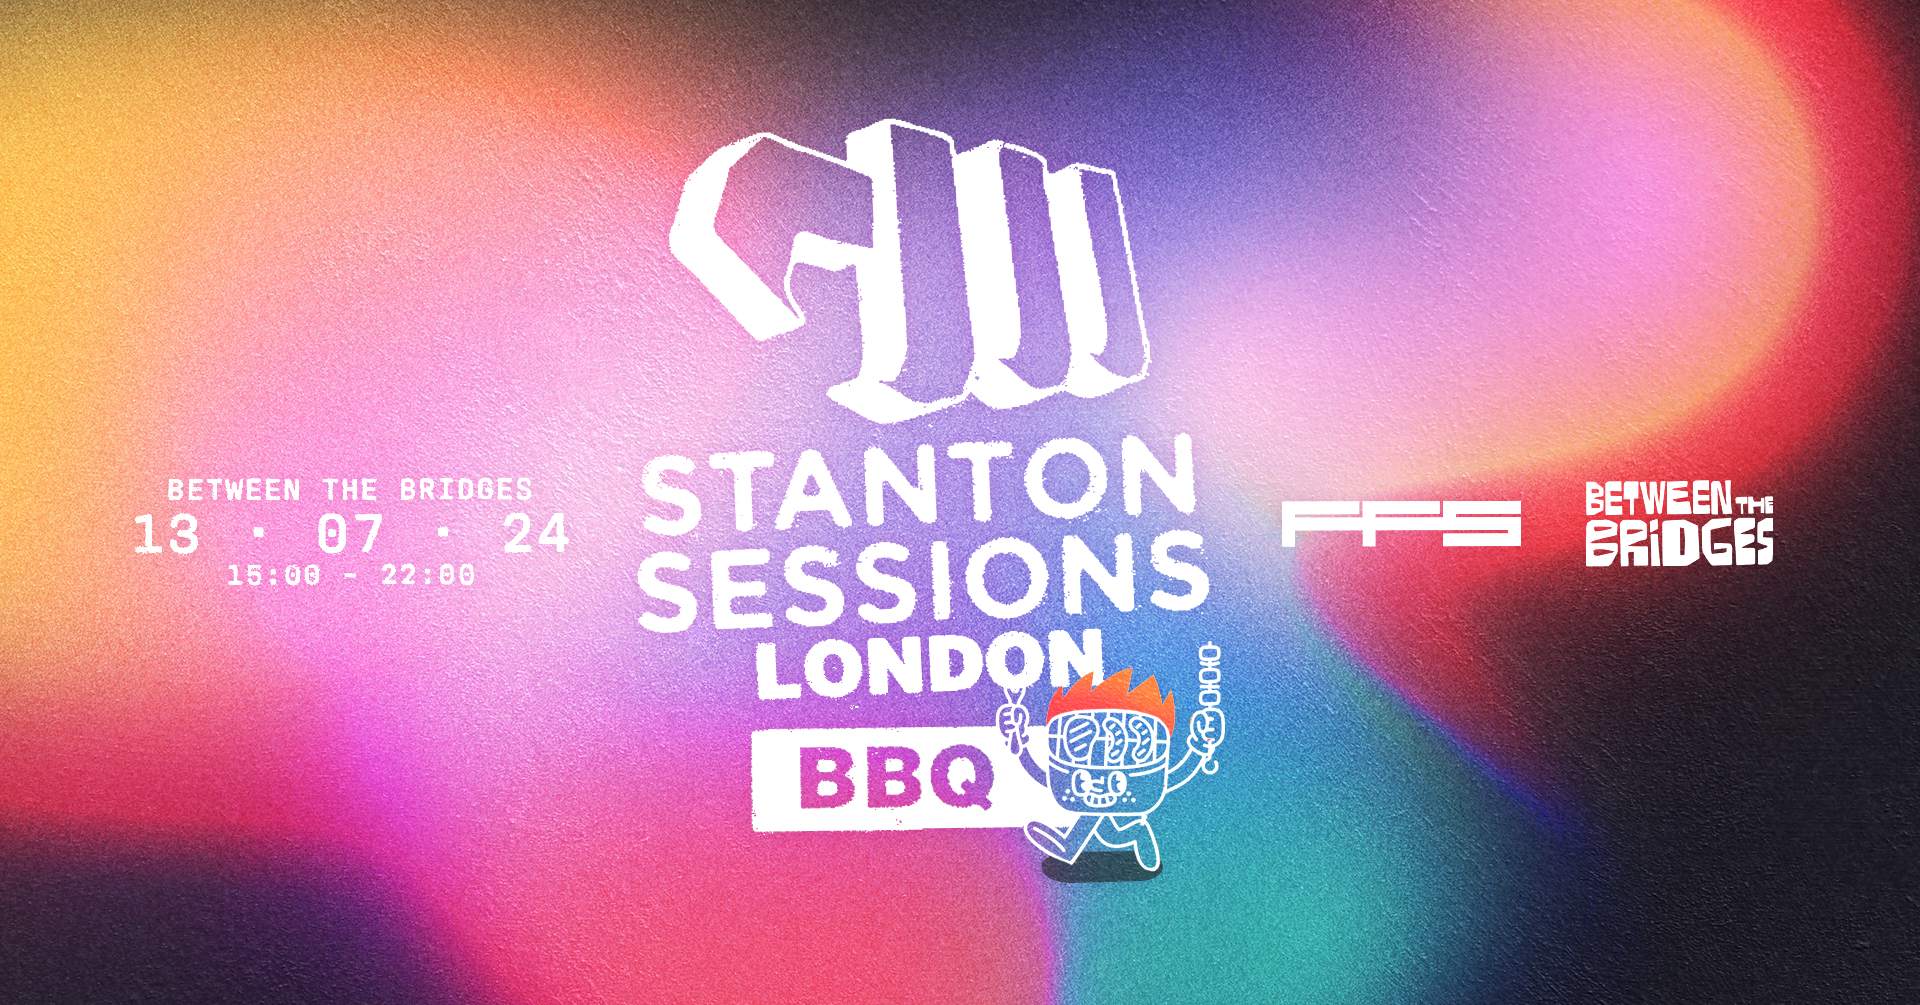 Stanton Sessions London BBQ - フライヤー表